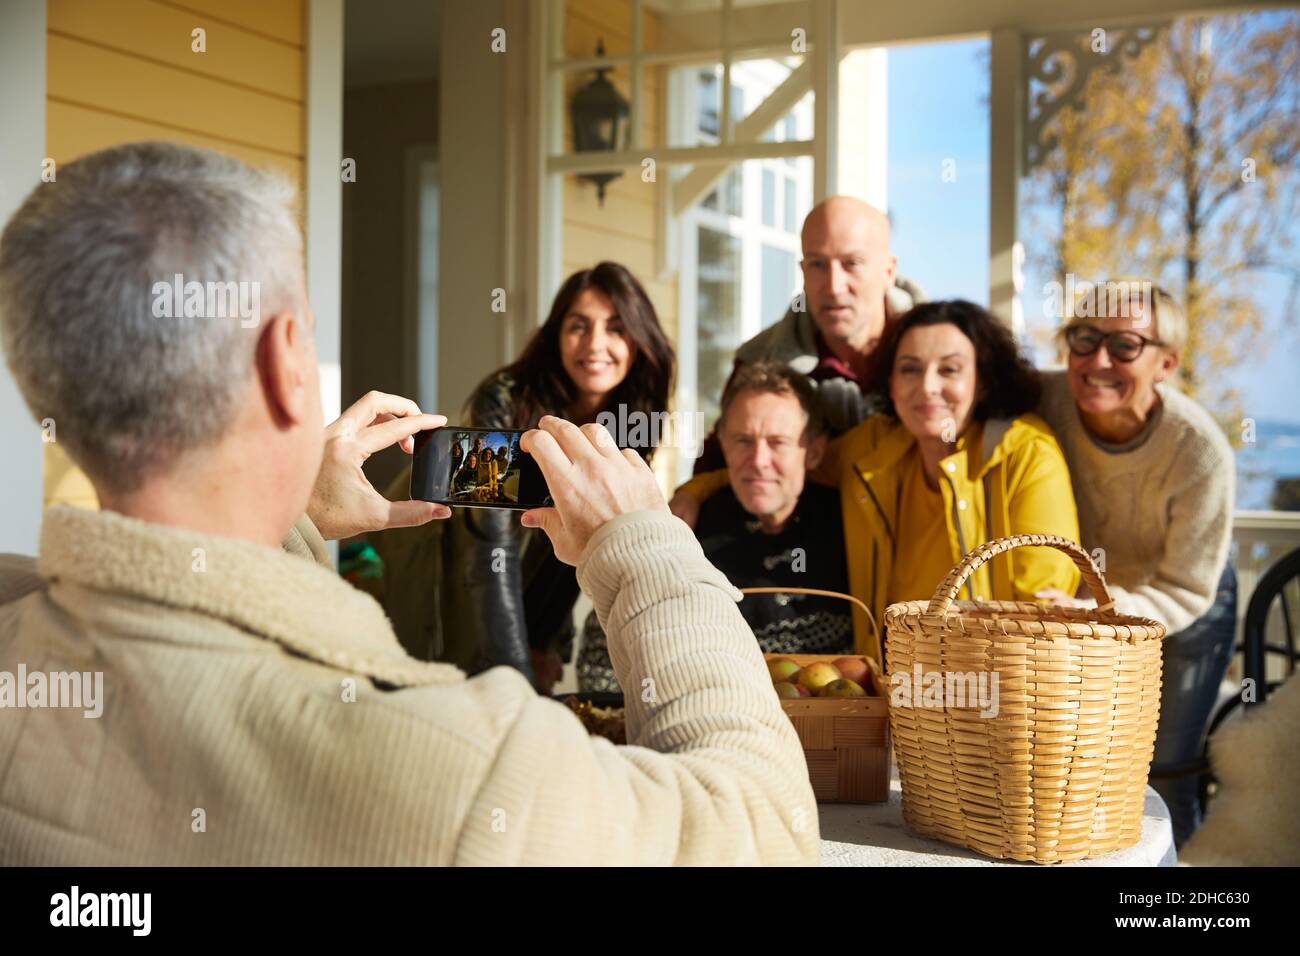 Reifer Mann fotografiert Freunde mit Smartphone auf der Veranda Stockfoto